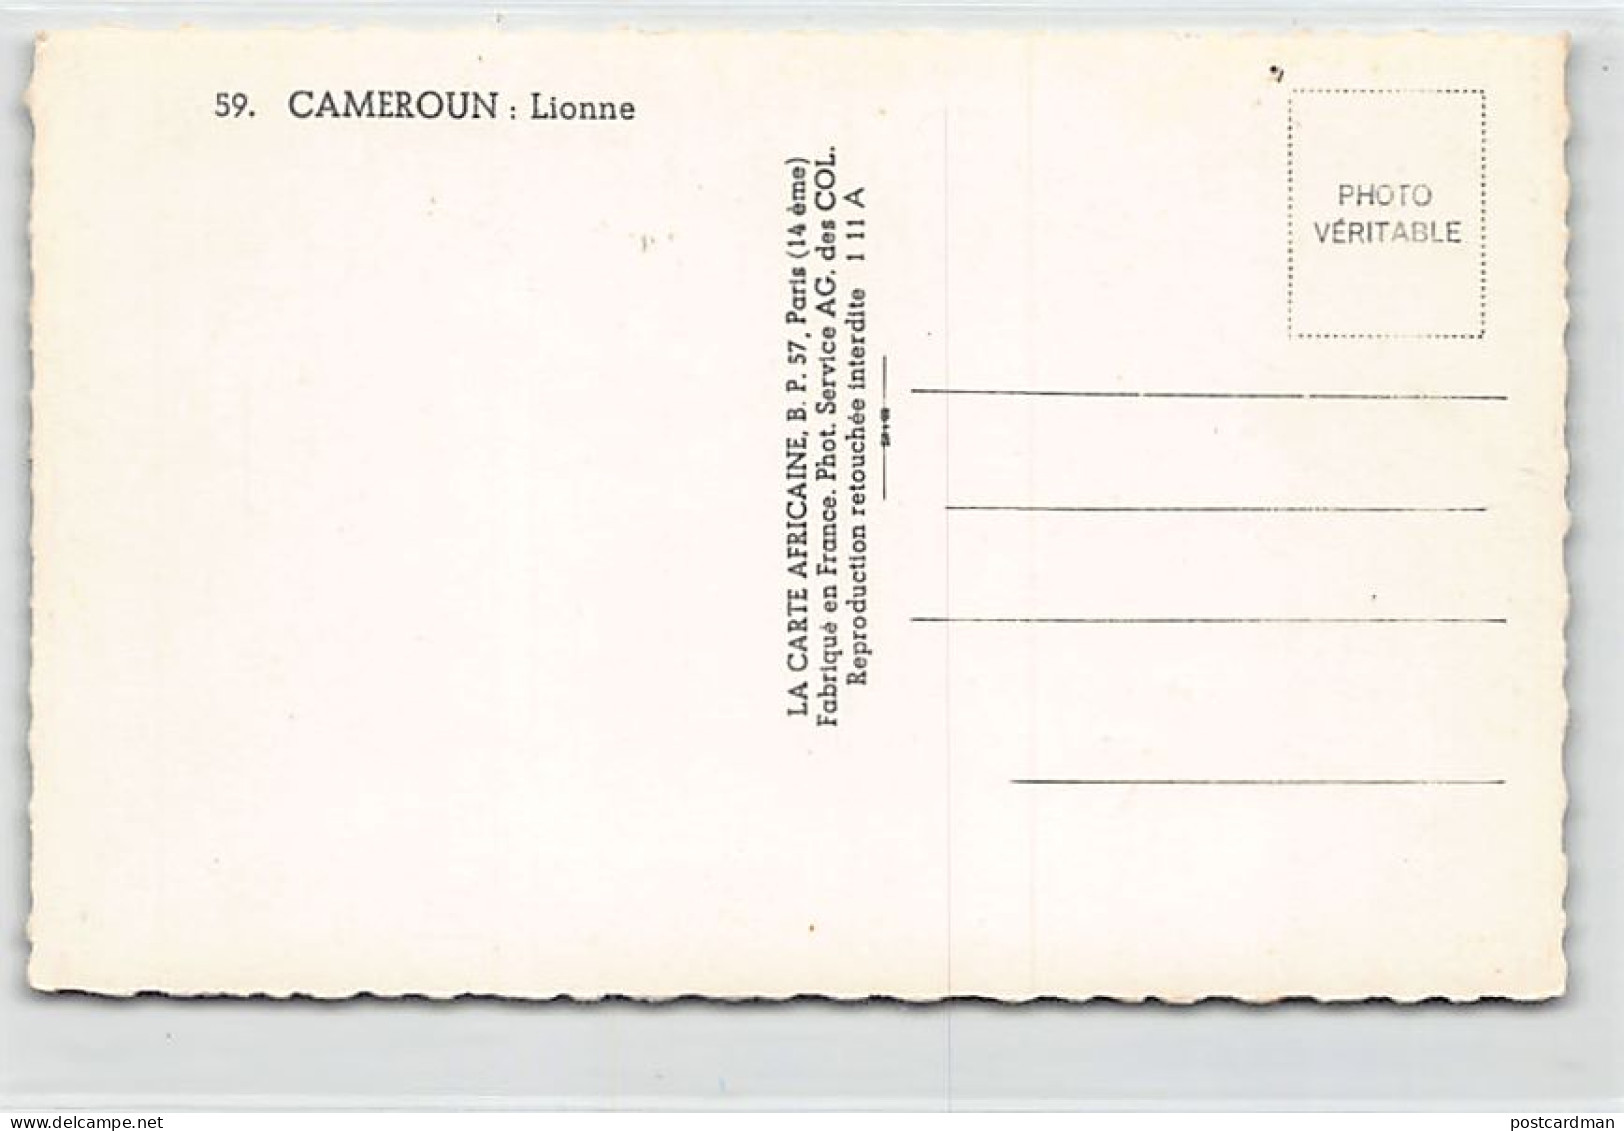 Cameroun - Lionne - Ed. La Carte Africaine 59 - Camerun